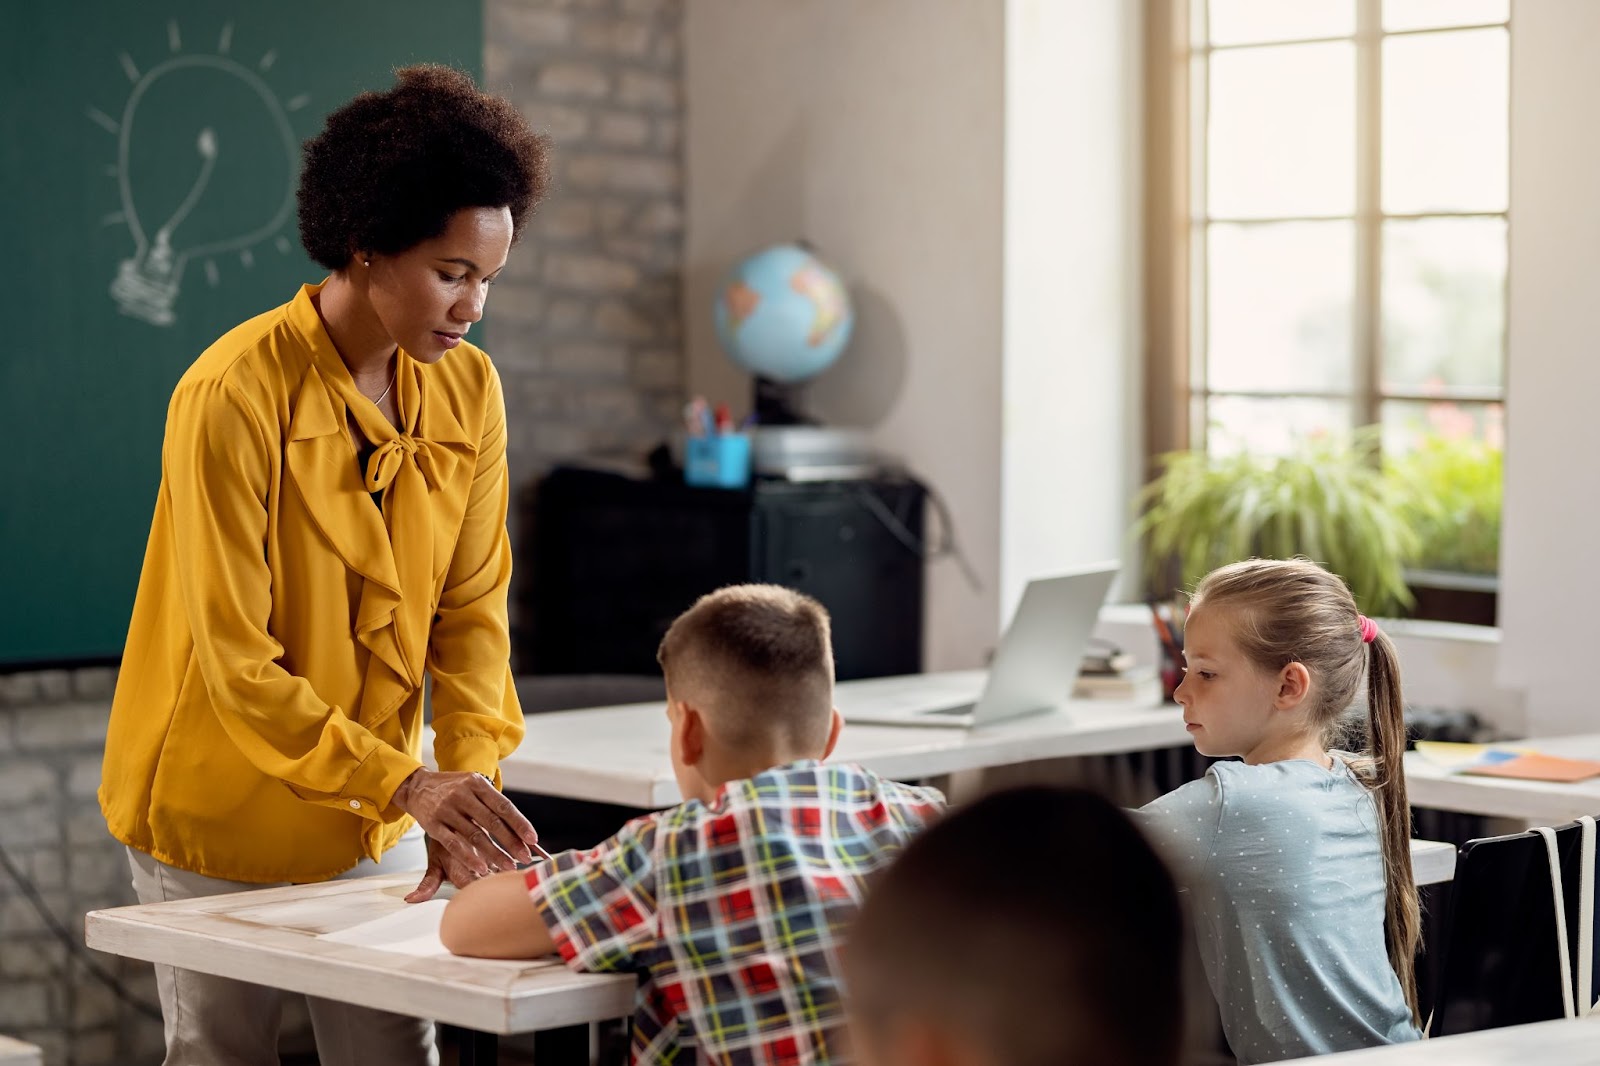 A professora está em frente a uma mesa com dois alunos, ela está segurando uma caneta próxima à folha do menino. A imagem representa como trabalhar a autoavaliação em sala de aula.